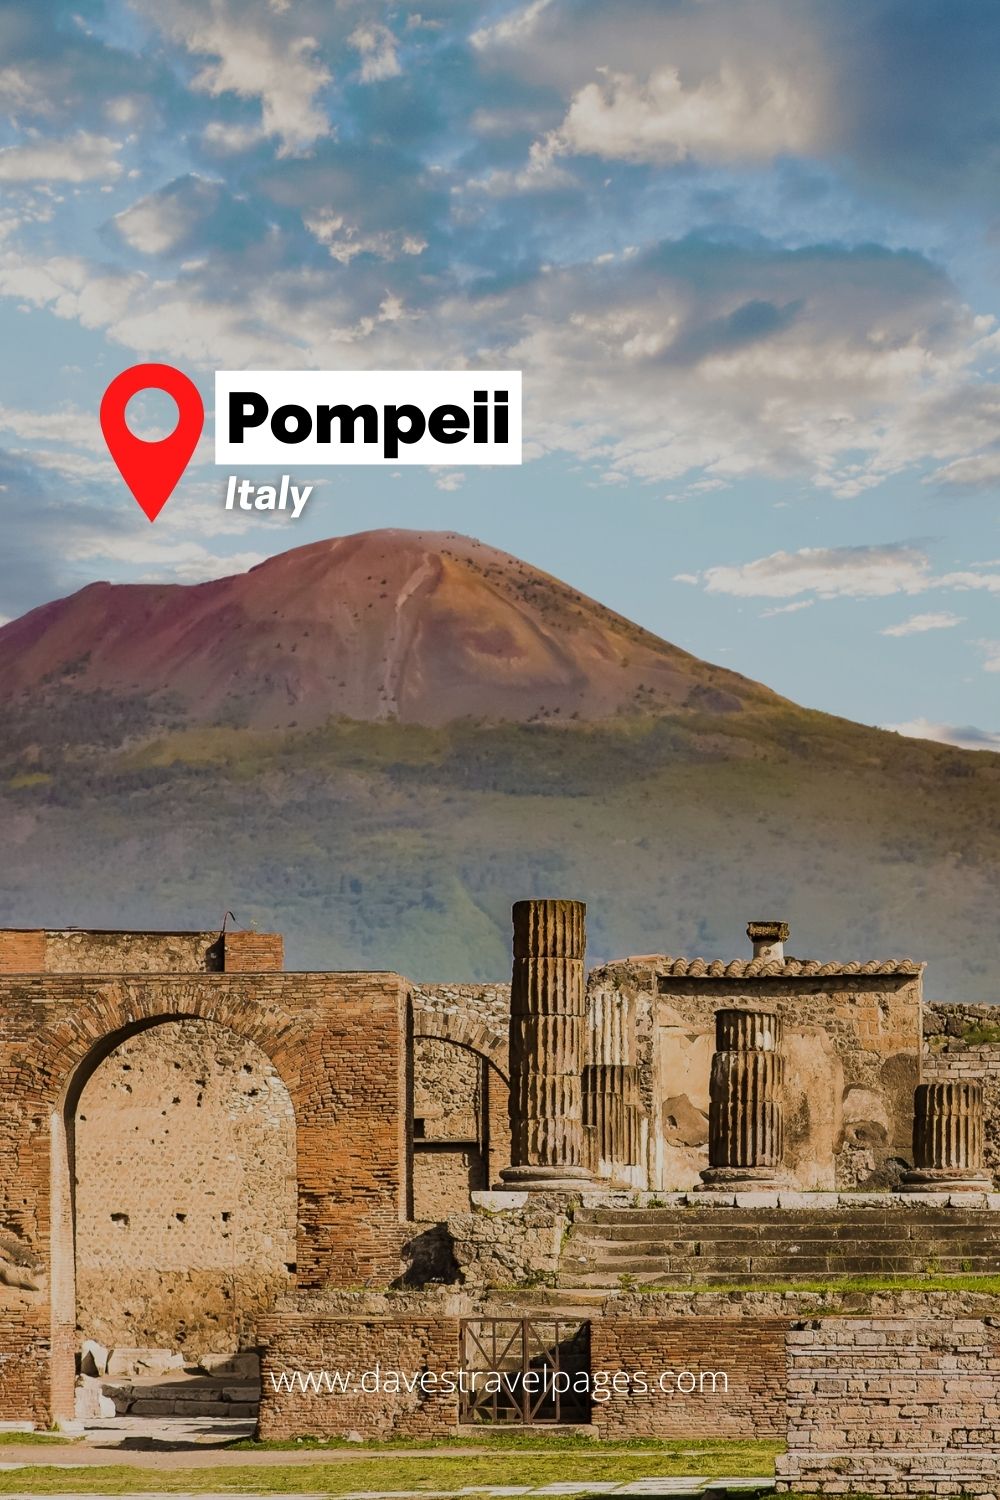 The European Landmark of Pompei